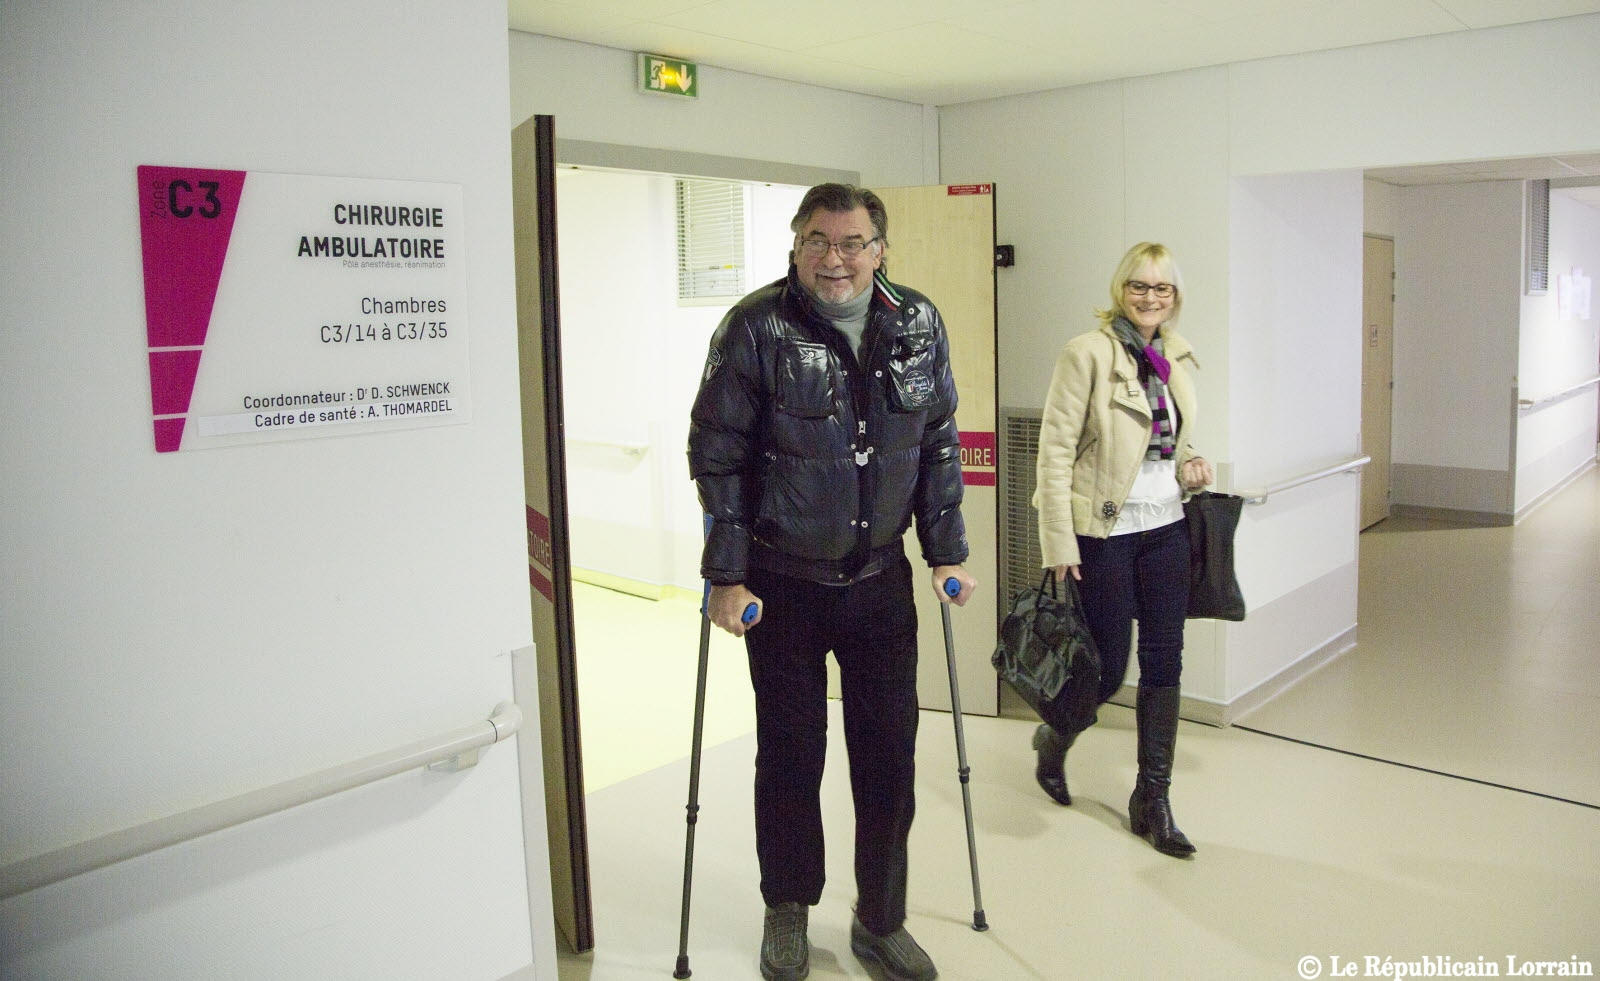 CINEMA: le patient quitte l'hôpital quelques minutes après
 implantation d'une prothèse totale de genou